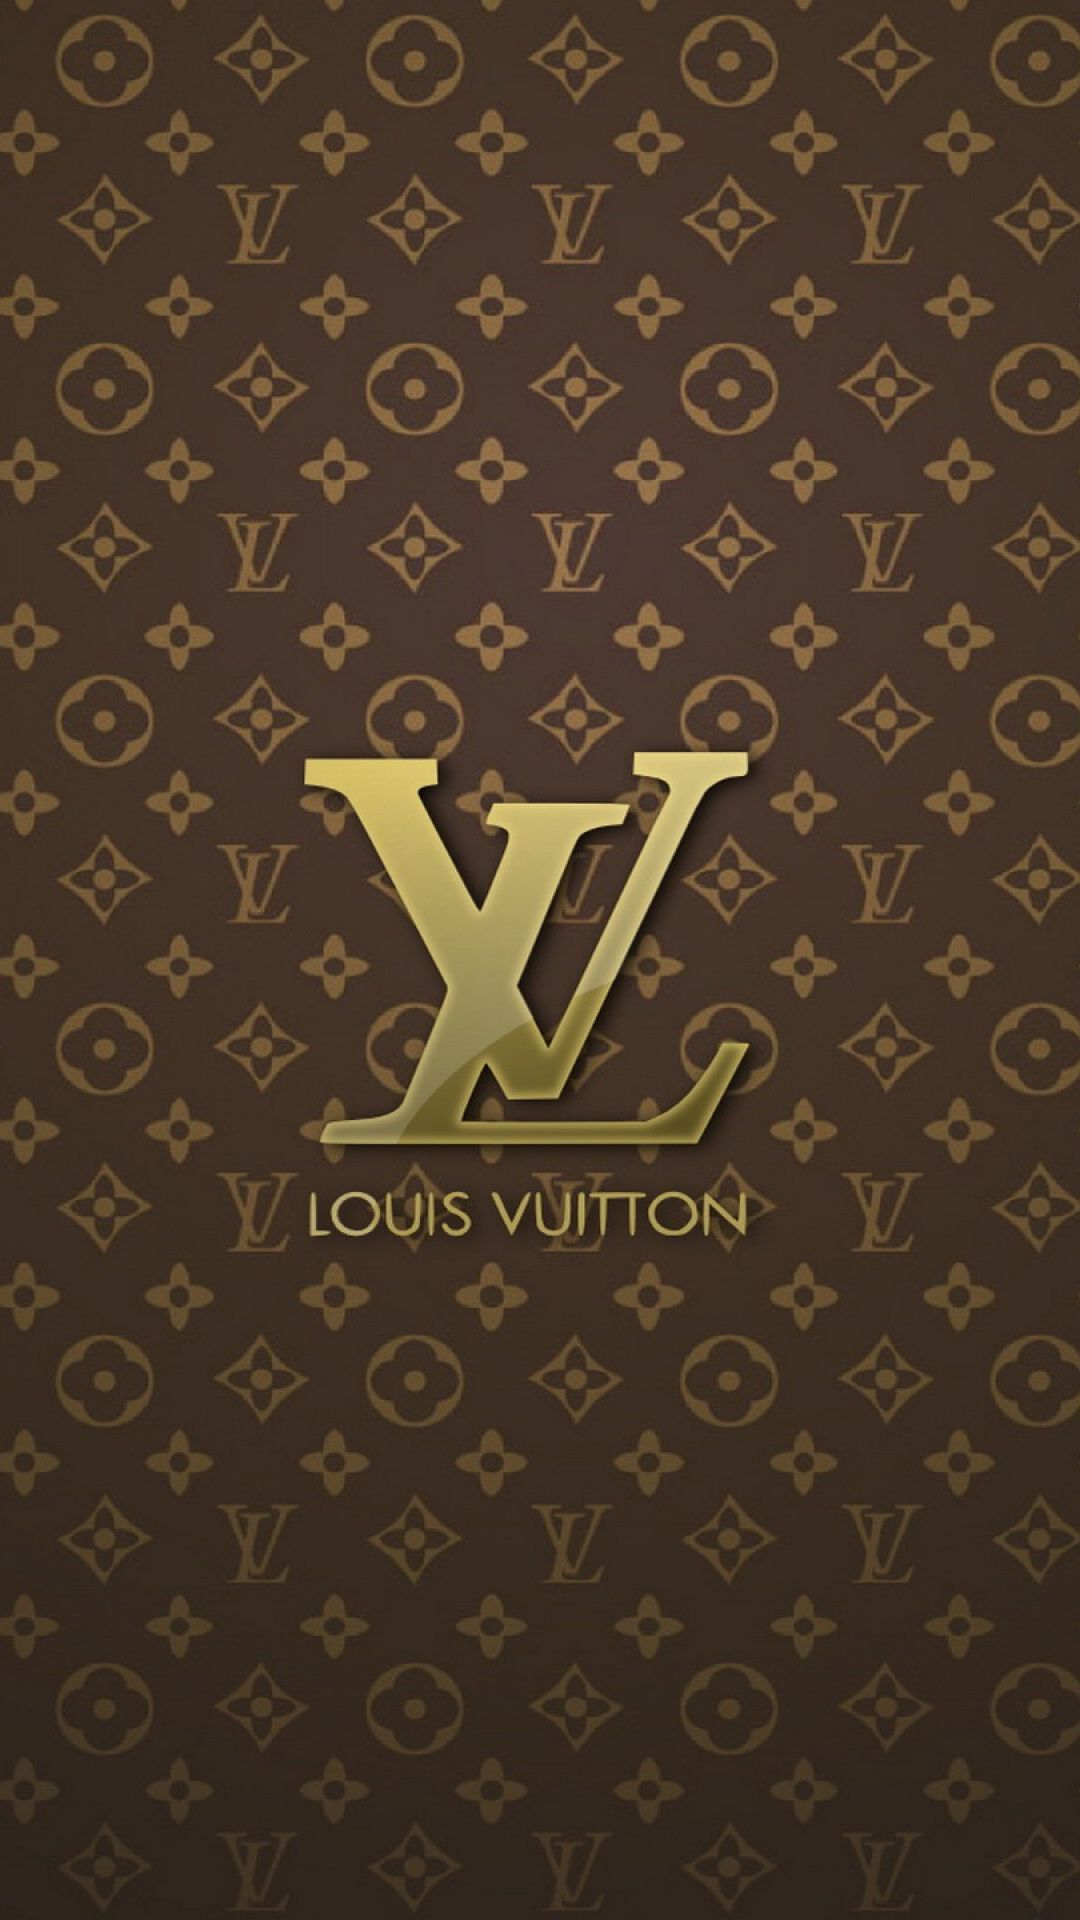 Hình nền điện thoại Louis Vuitton - Sở hữu ngay bộ sưu tập hình nền điện thoại Louis Vuitton tràn đầy sức sống và đẳng cấp. Chúng tôi đã chọn lọc những hình ảnh đẹp nhất, không chỉ để làm nền cho điện thoại của bạn mà còn mang lại niềm hạnh phúc và tự tin khi sử dụng.